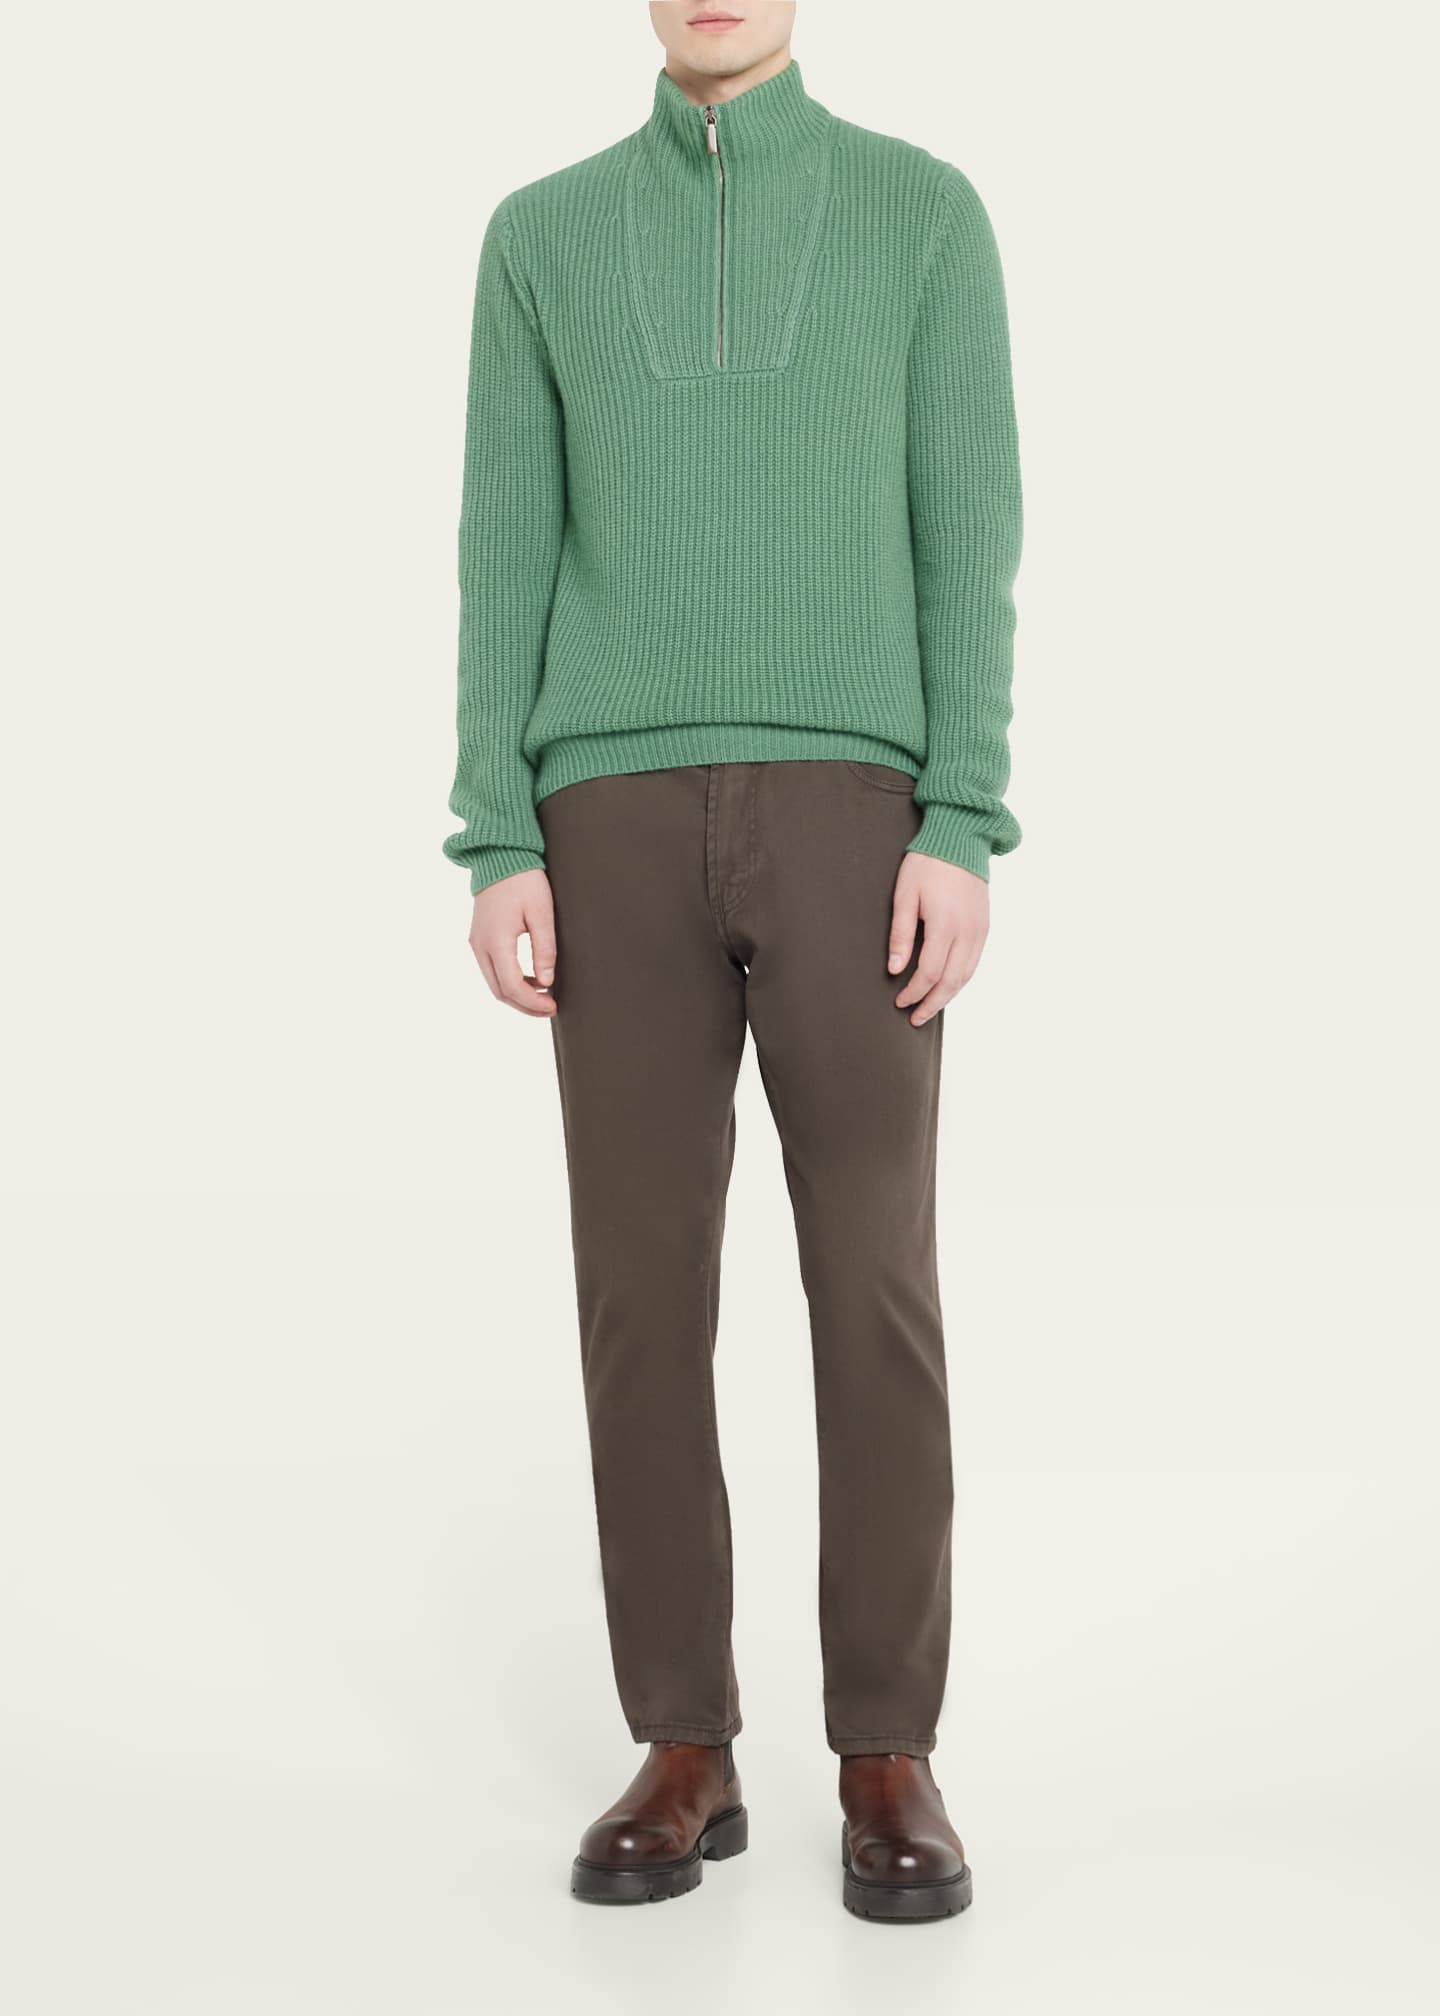 Iris Von Arnim Men's Half-Zip Ribbed Cashmere Sweater - Bergdorf Goodman